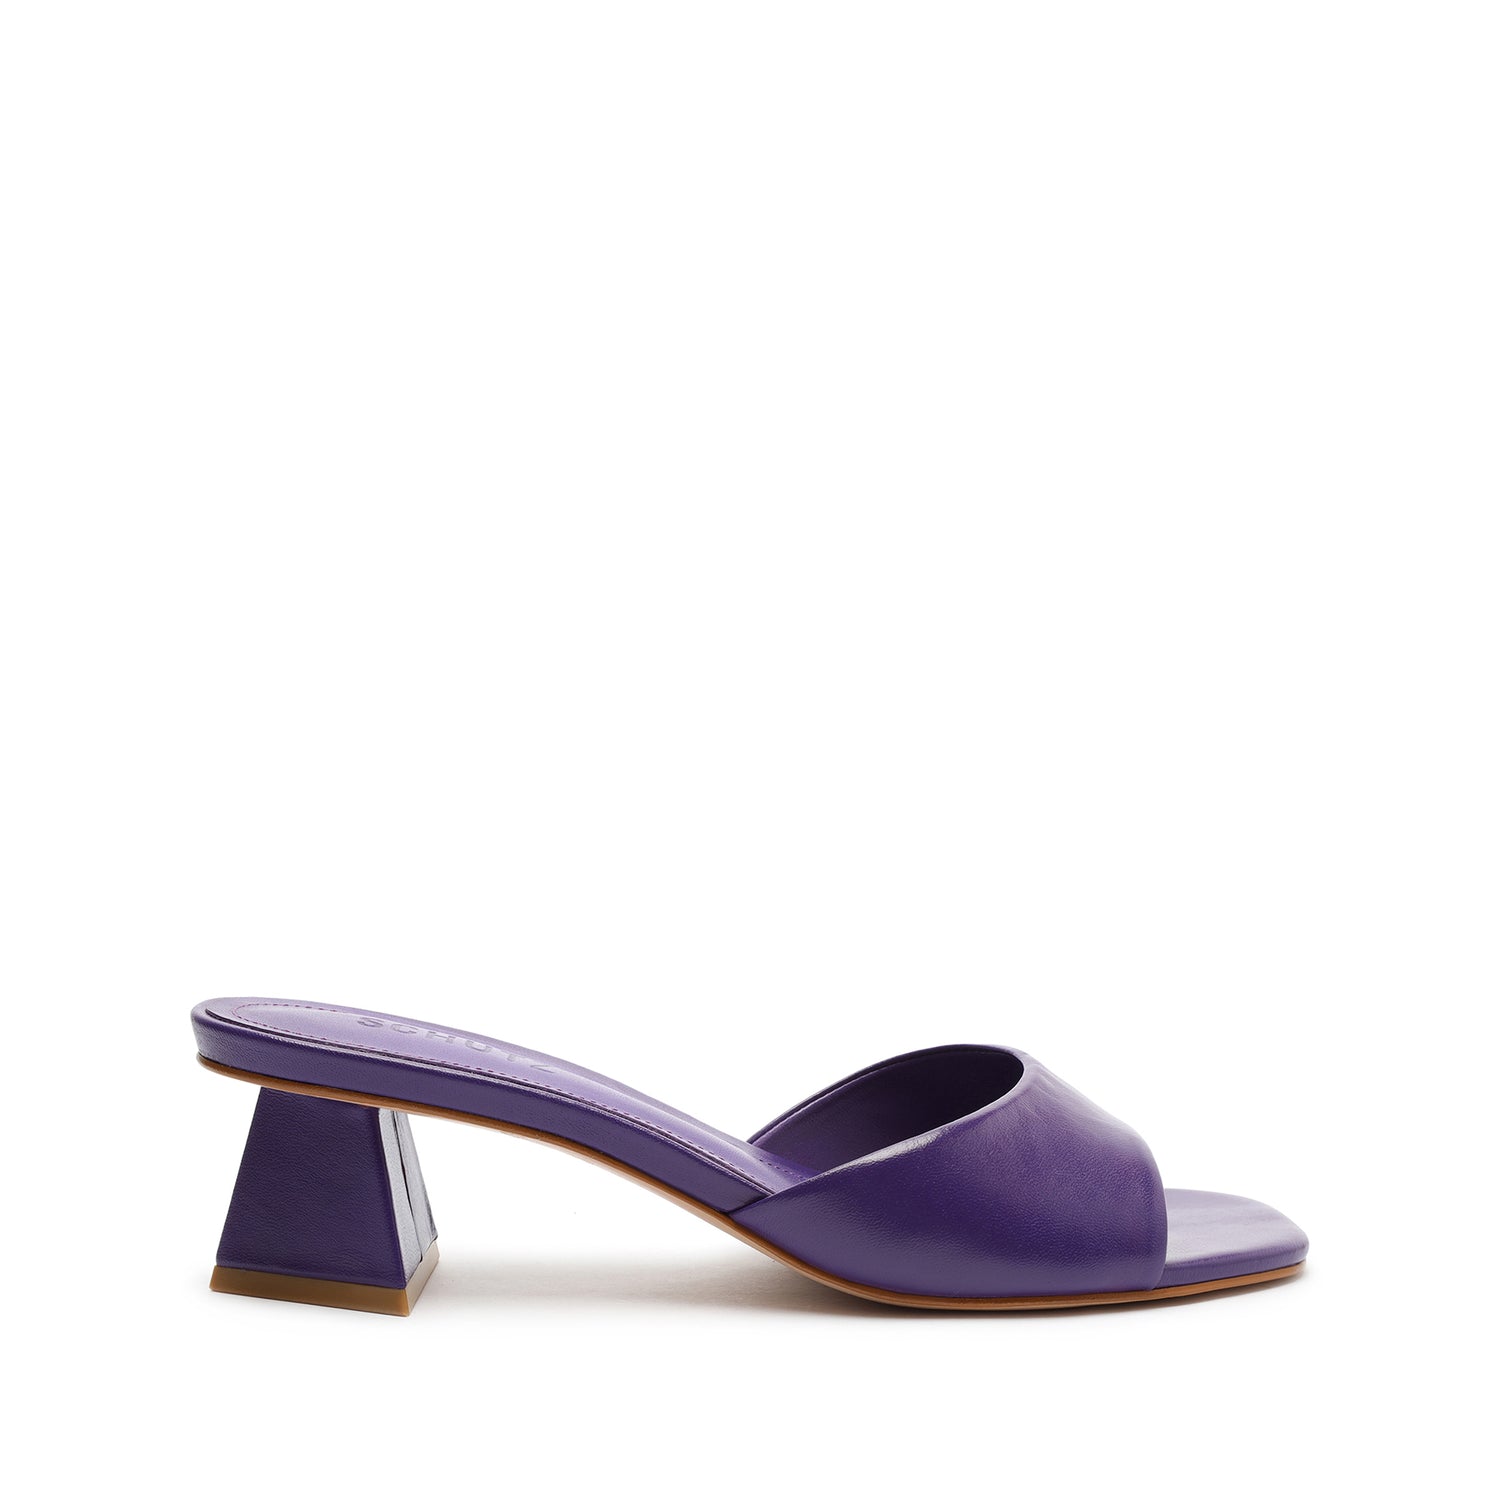 Lizah Lo Leather Sandal Sandals Sale 5 Purple Cherry Leather - Schutz Shoes